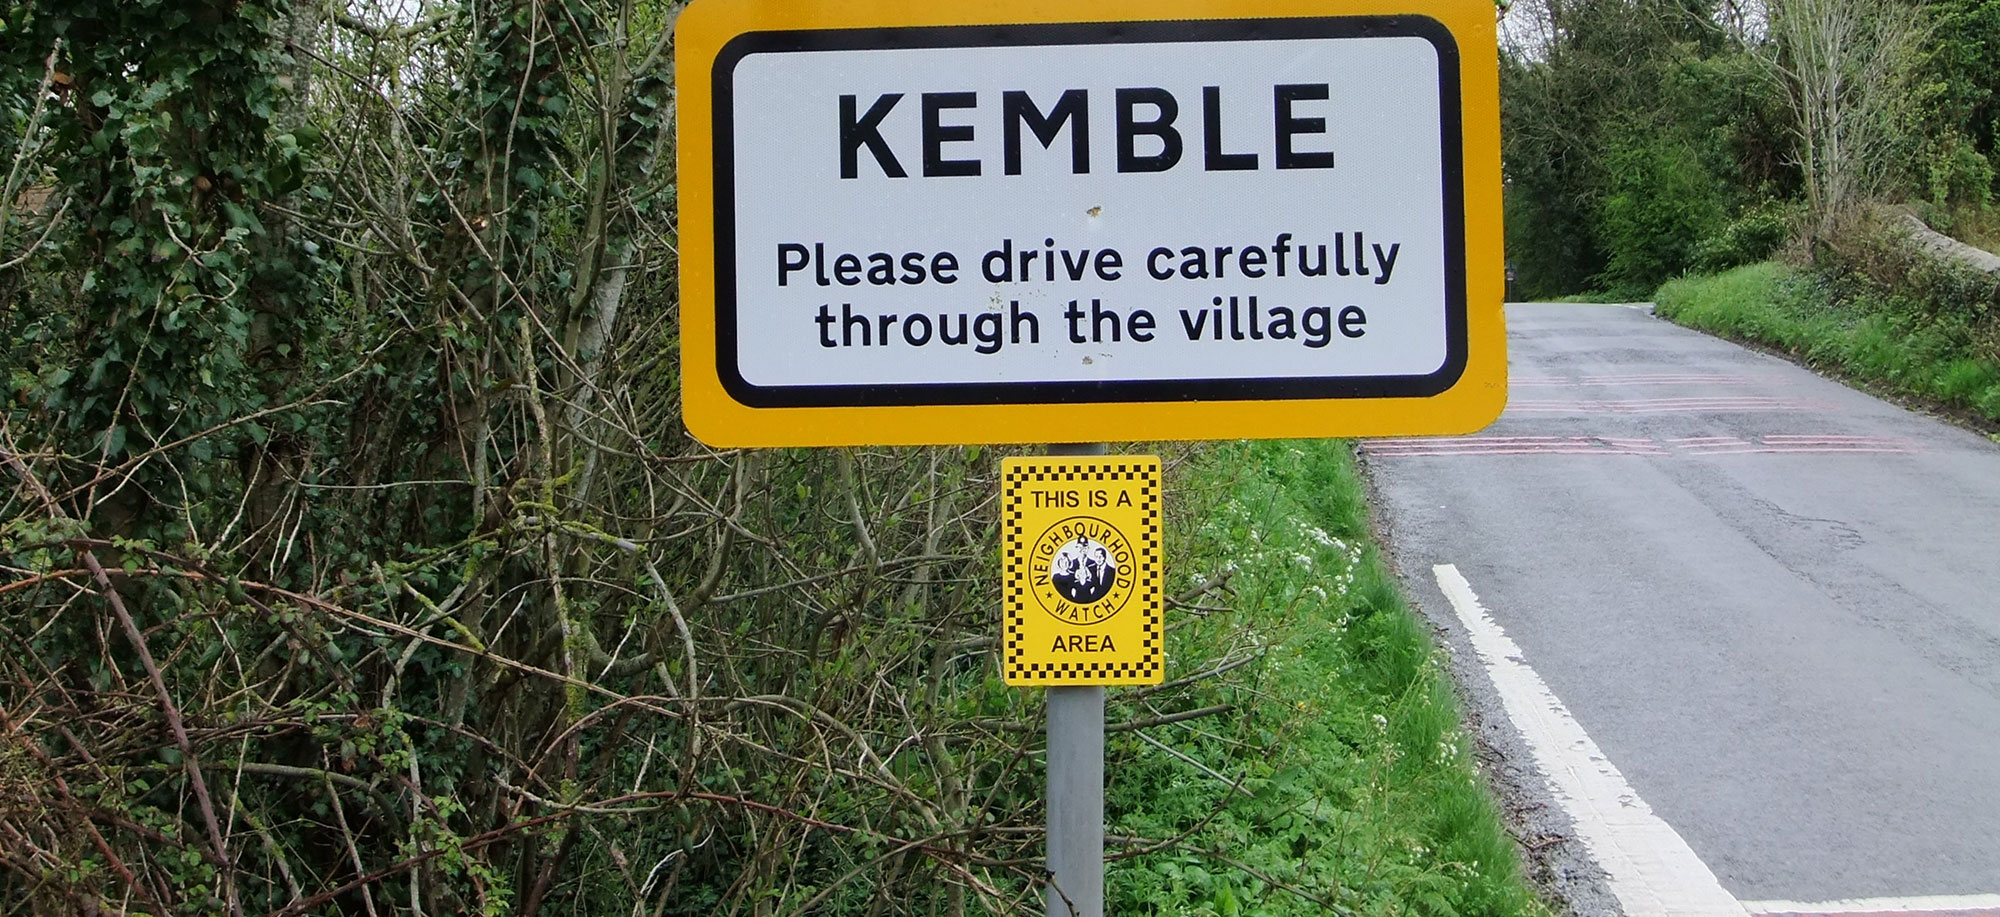 Kemble road sign